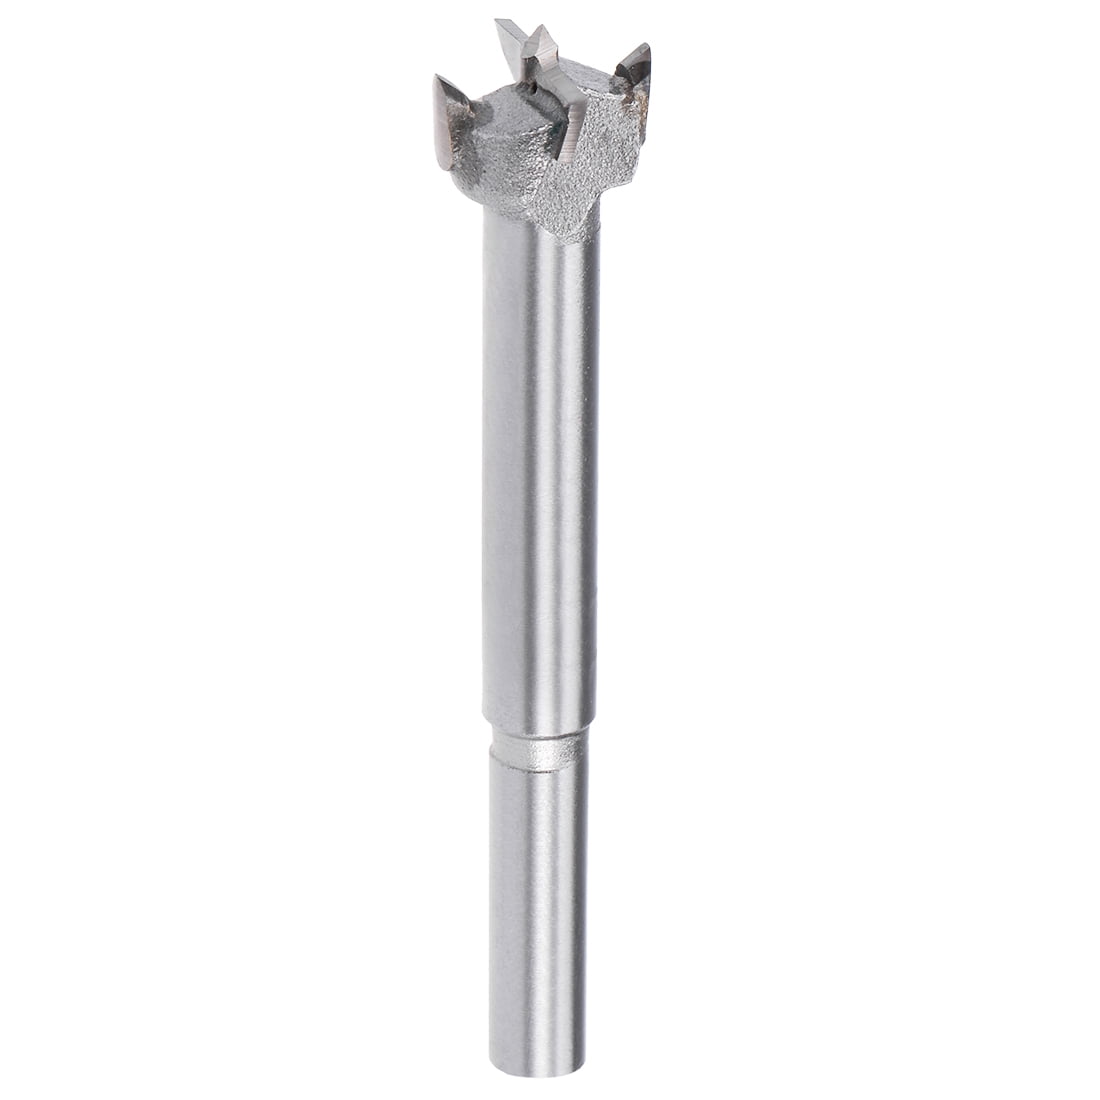 5 inch length Forstner drill with hinge 18 mm diameter 7 mm shank 